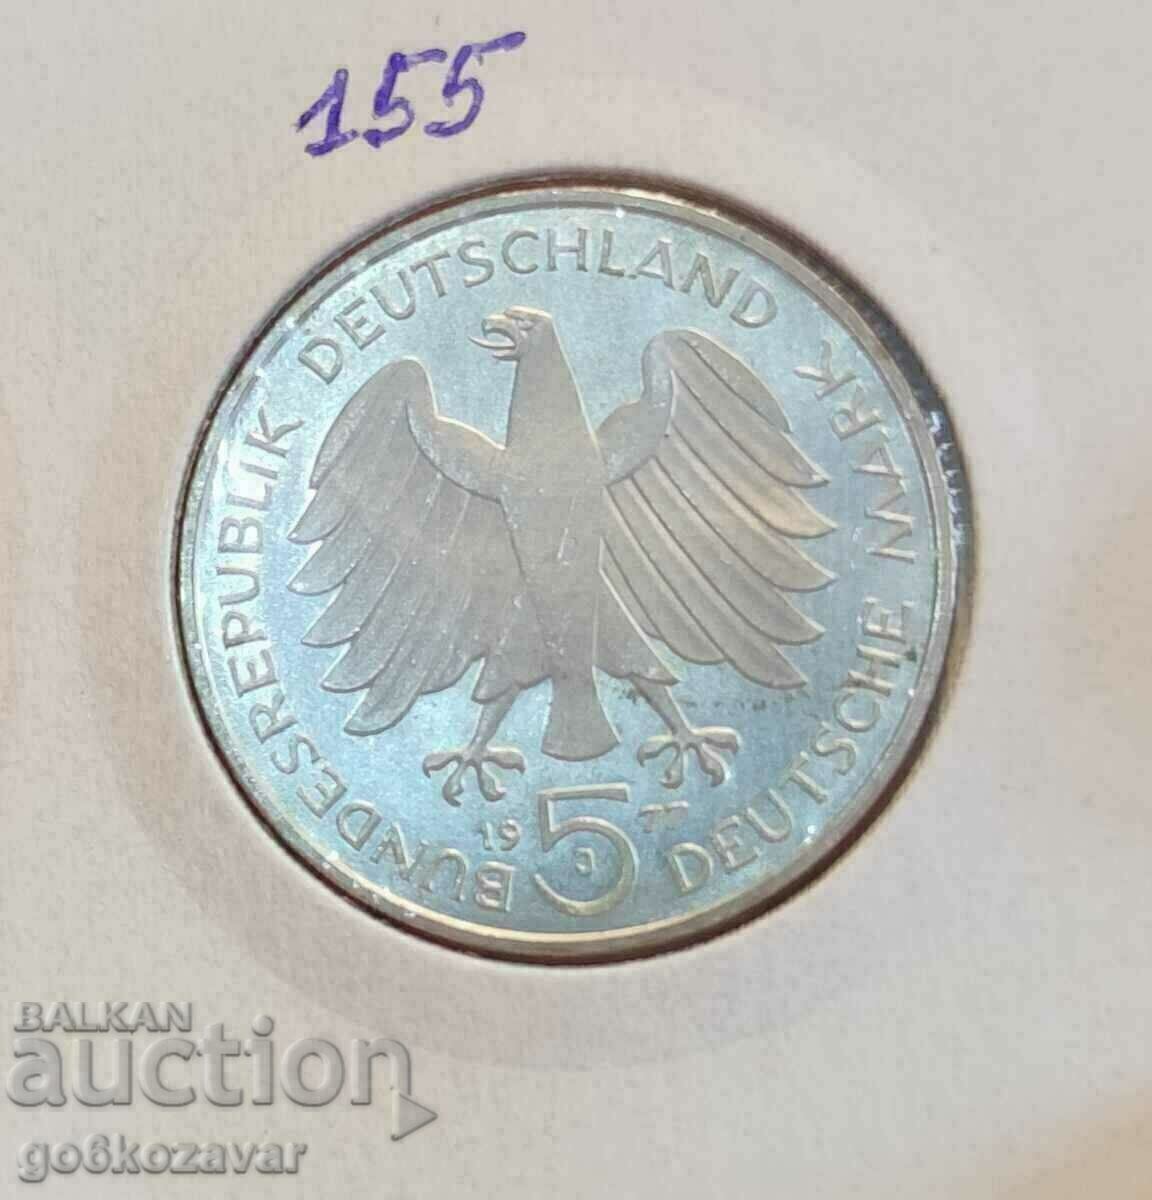 Γερμανία 5 γραμματόσημα 1977 Silver-Jubilee, UNC